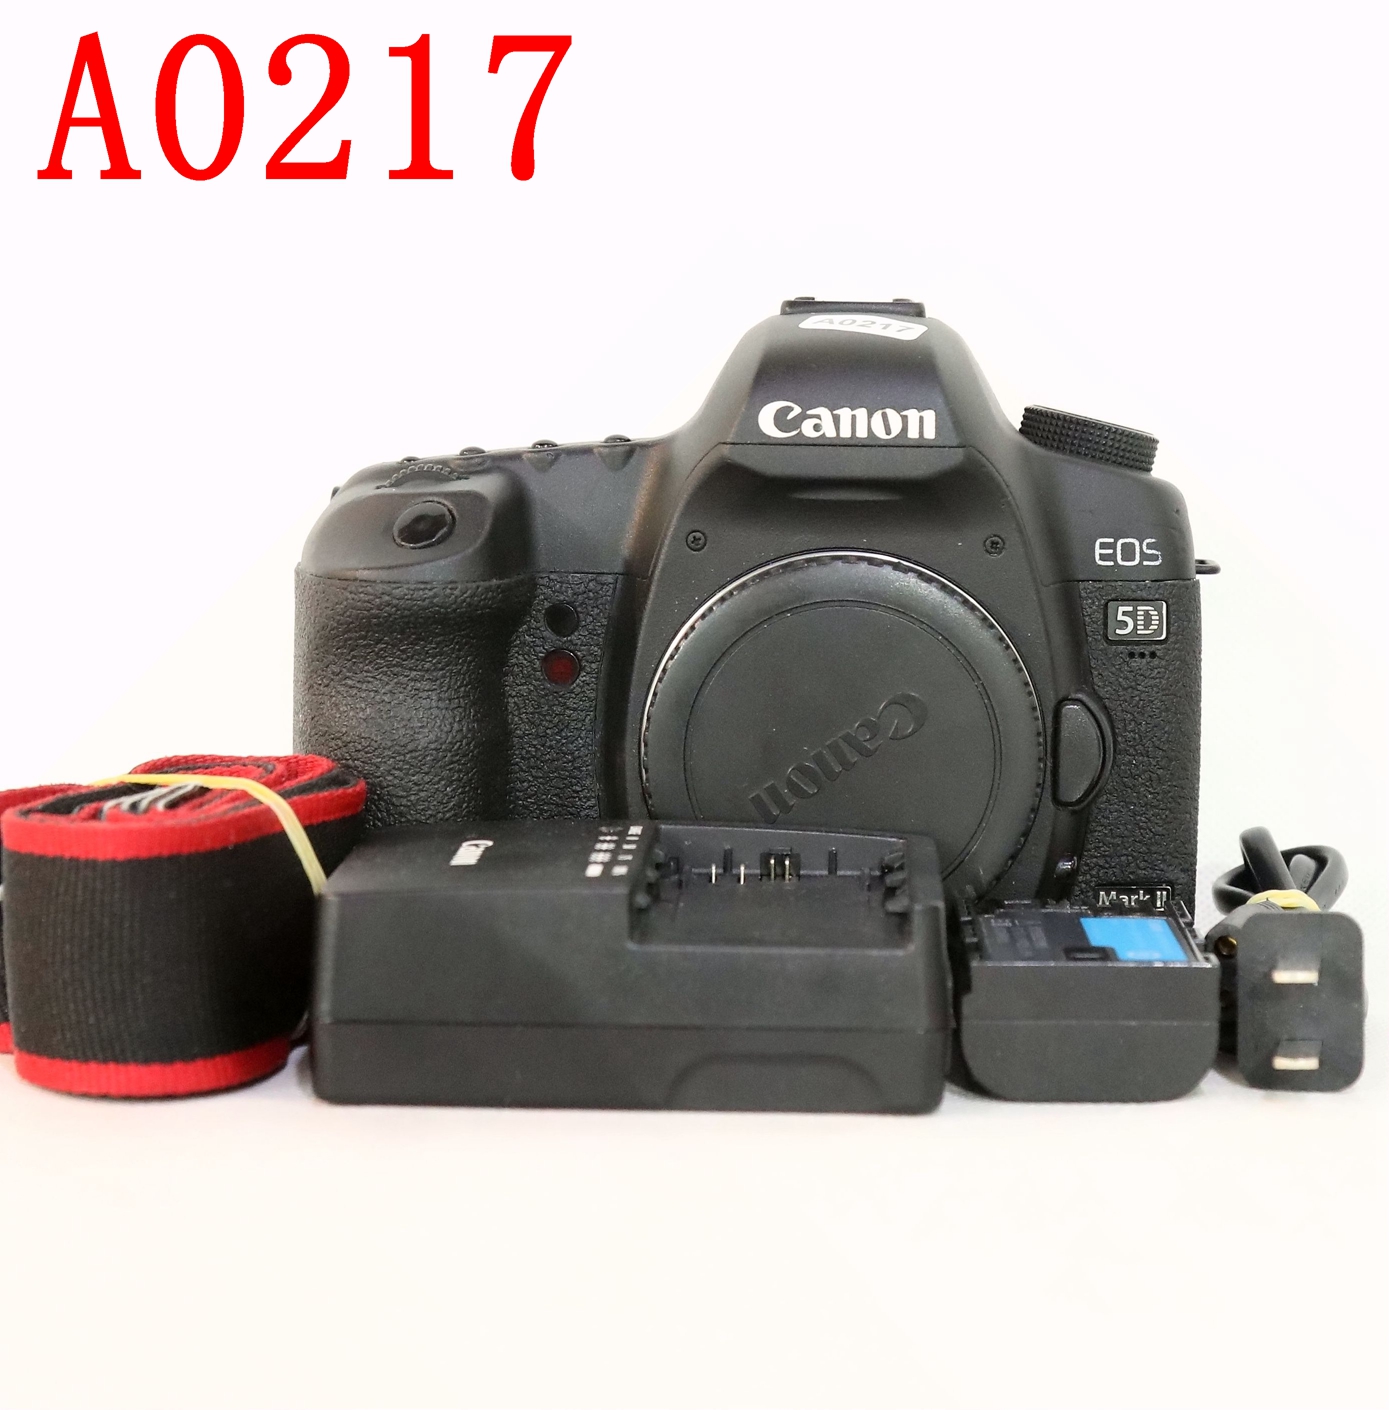 佳能 5D Mark II全画幅单反相机编号A0217